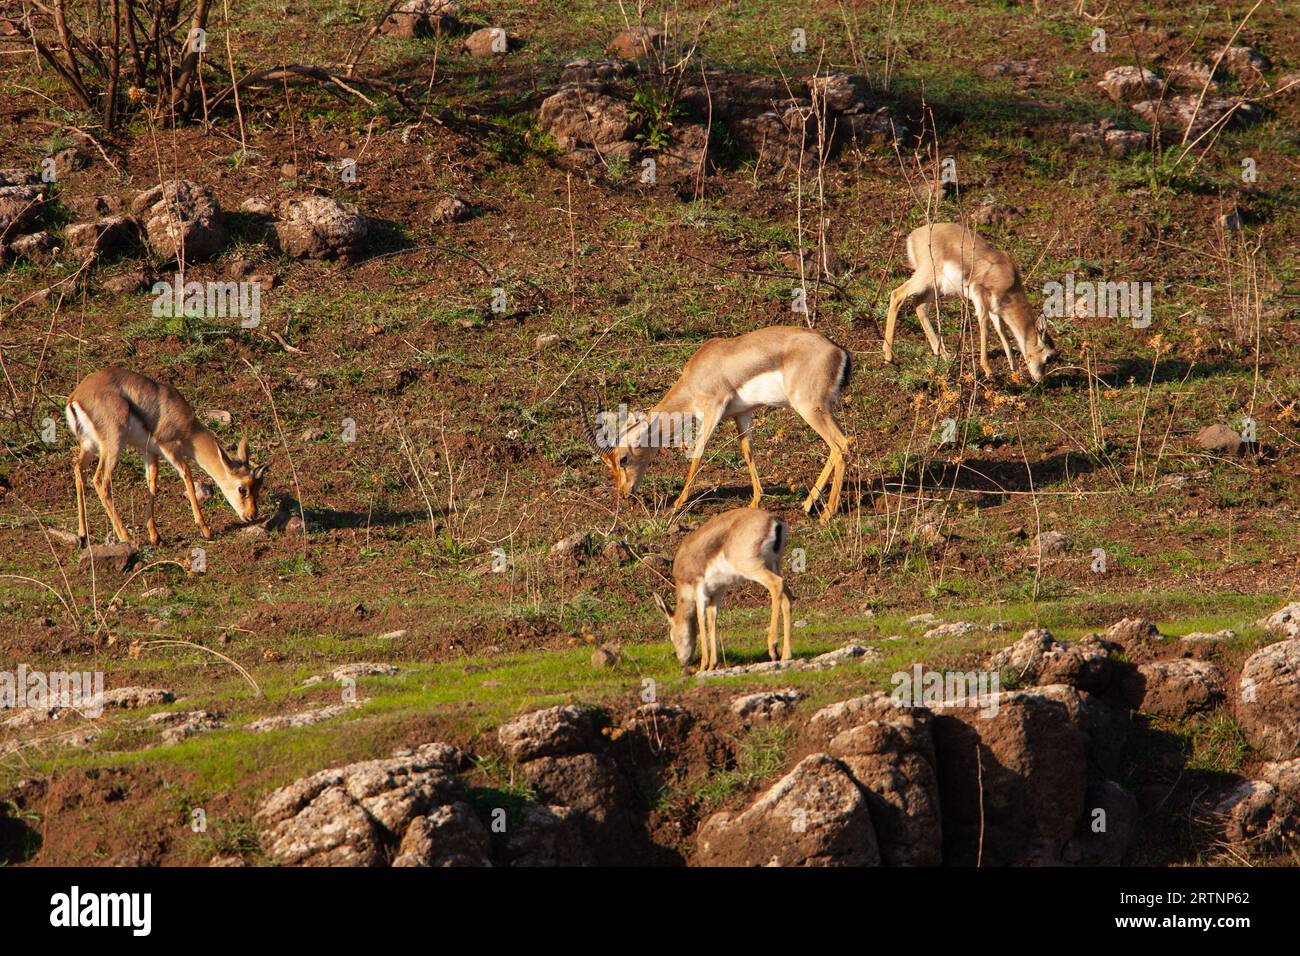 Ein Hörer von Mountain Gazelle (Gazelle). Fotografiert in Israel. Die Berggazelle ist die häufigste gazelle in Israel, die größtenteils in Israel beheimatet ist Stockfoto